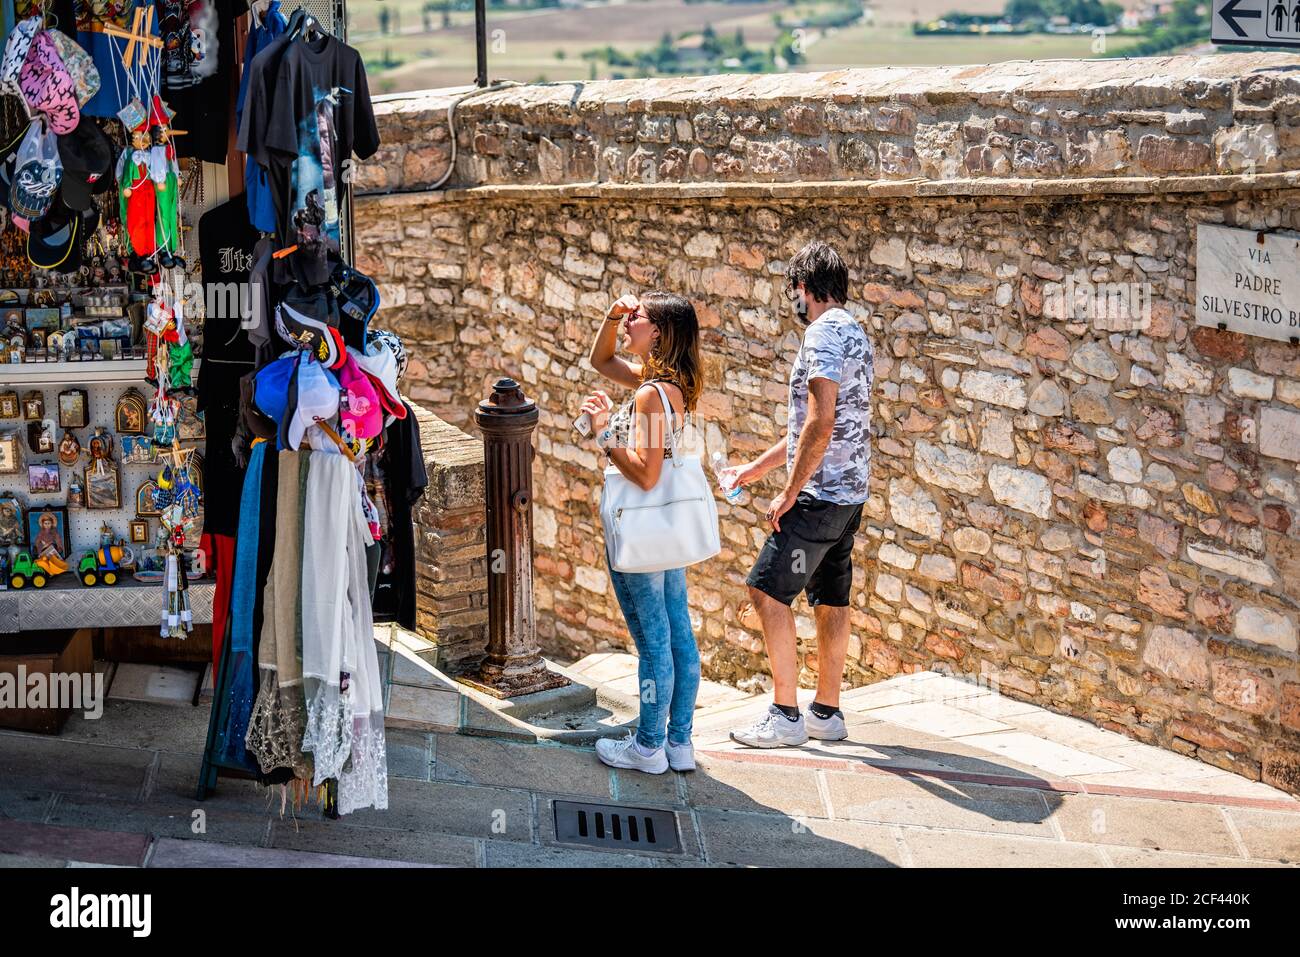 Assisi, Italie - 29 août 2018 : village de la ville d'Ombrie avec une femme dans un petit magasin vendeur de kiosque vendant des cadeaux souvenirs exposés Banque D'Images